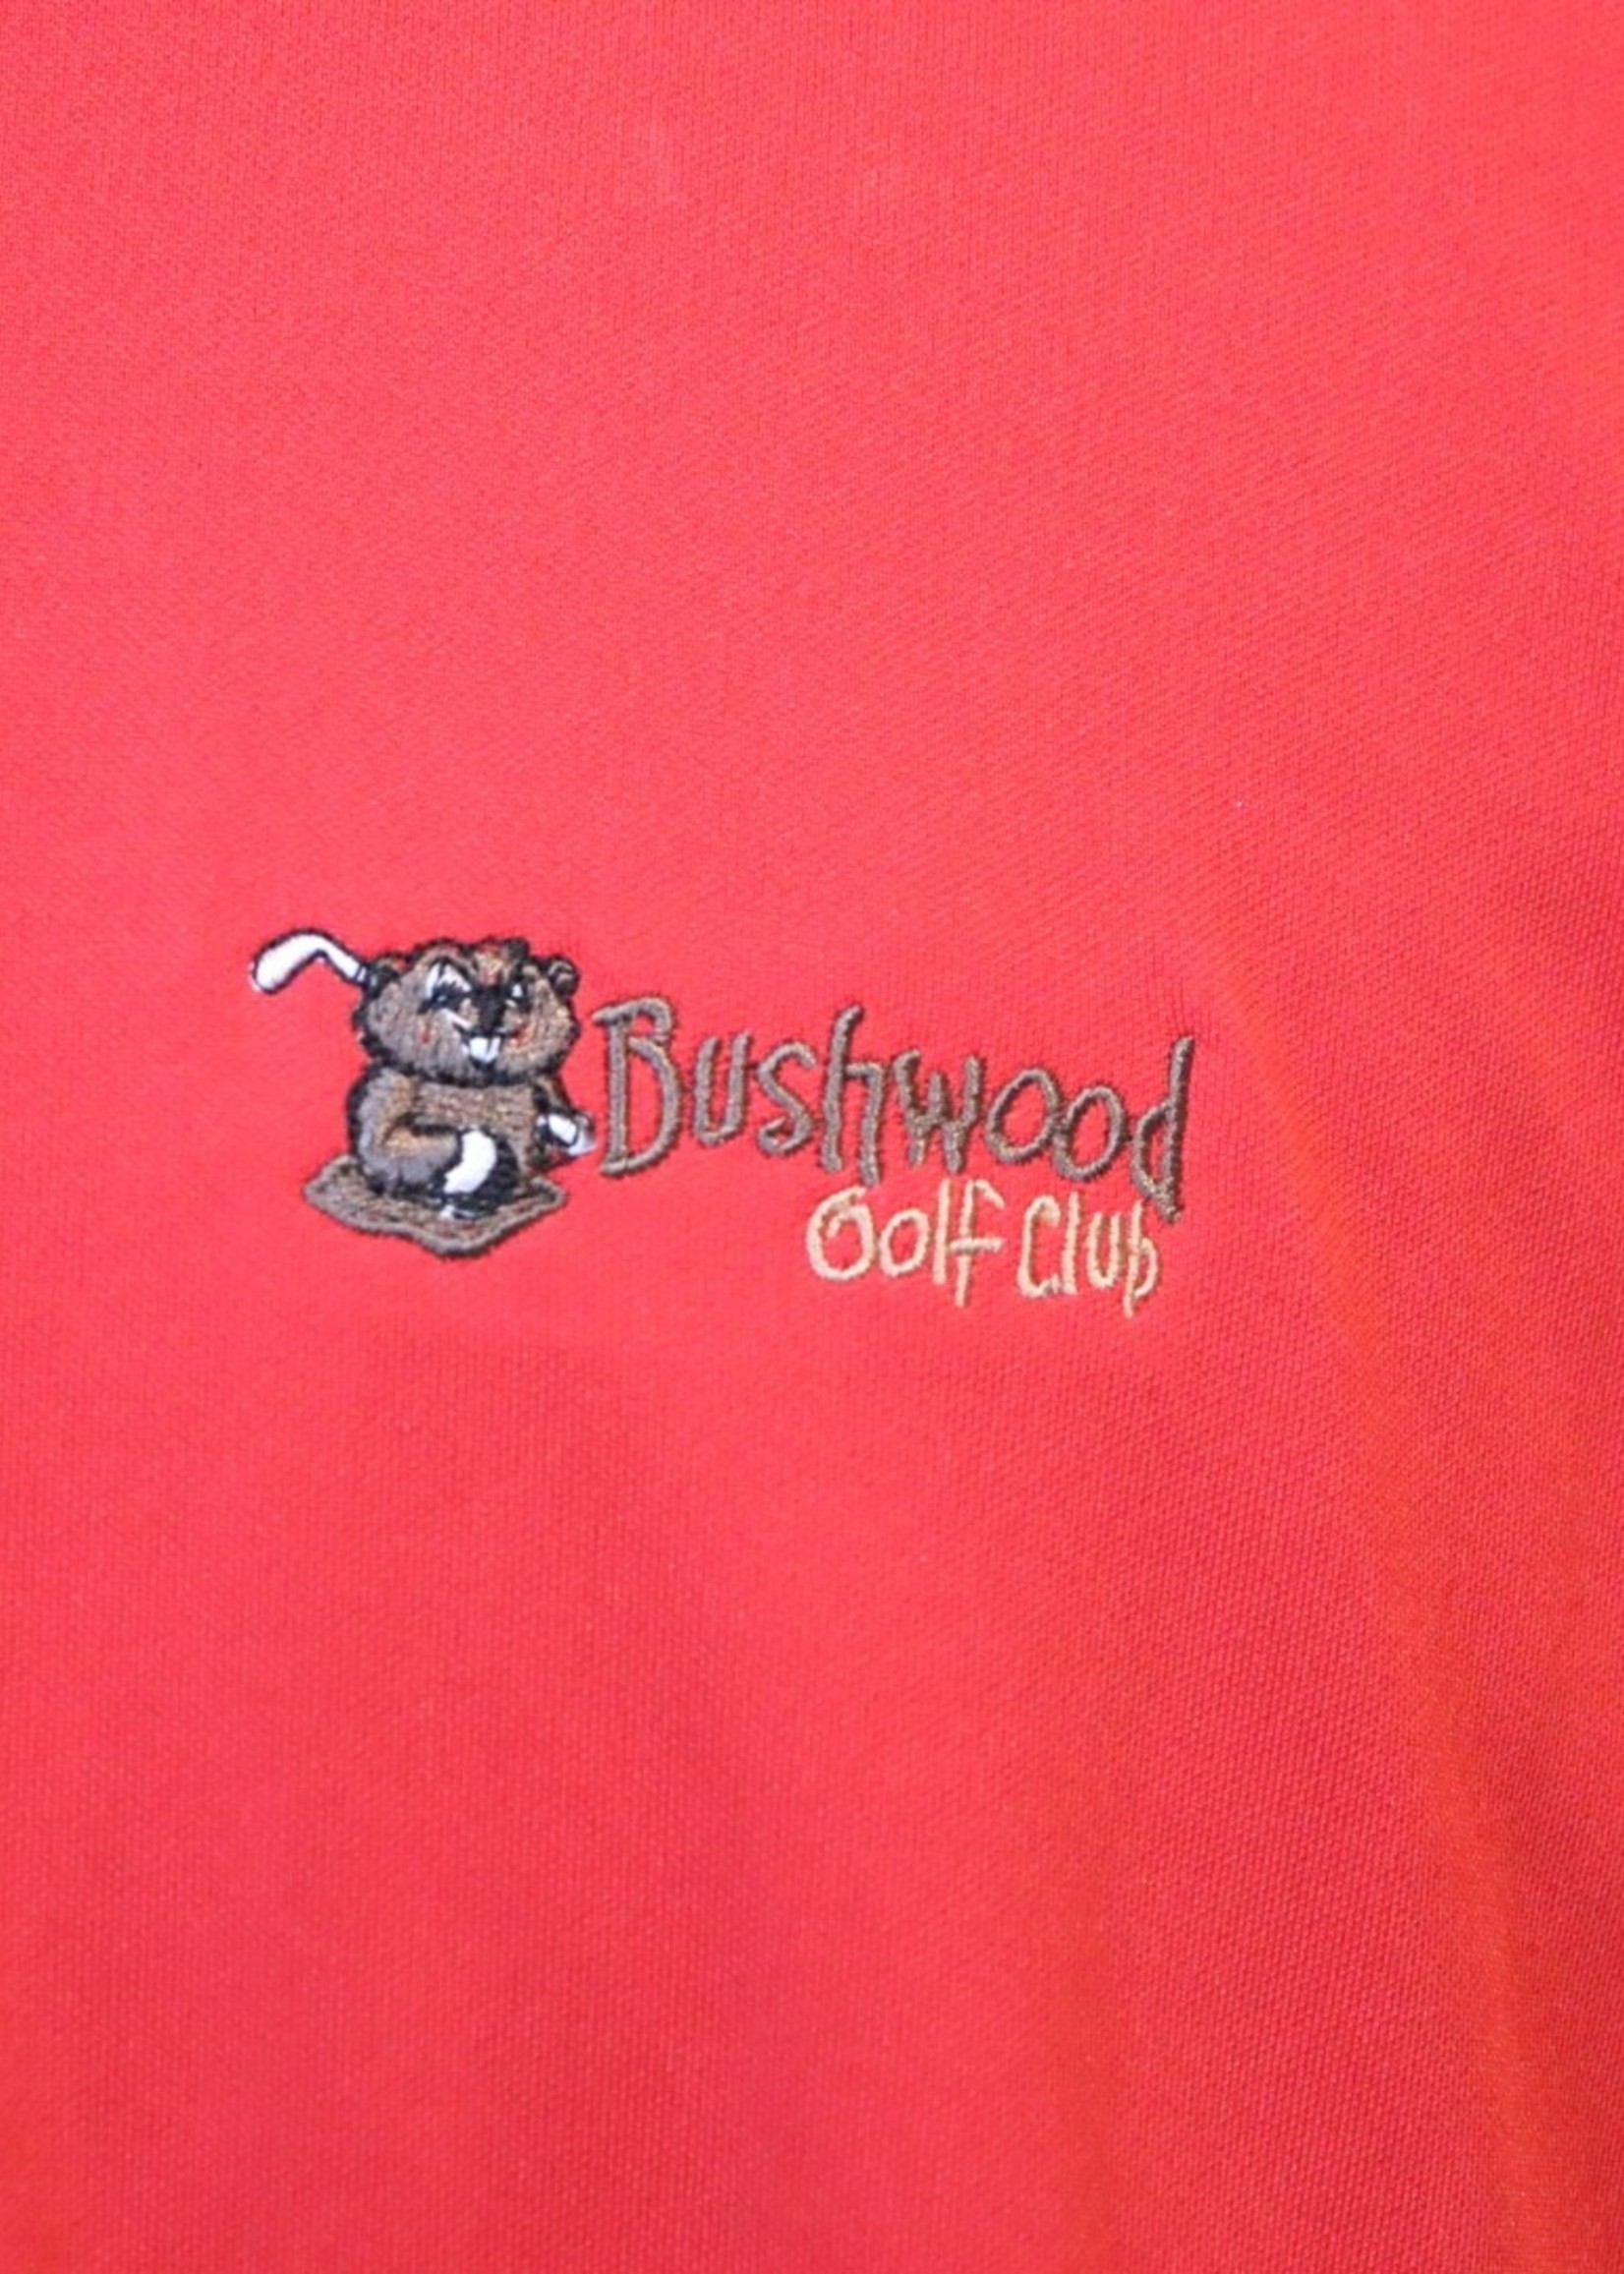 Bushwood logo StormTech Red Polo XL